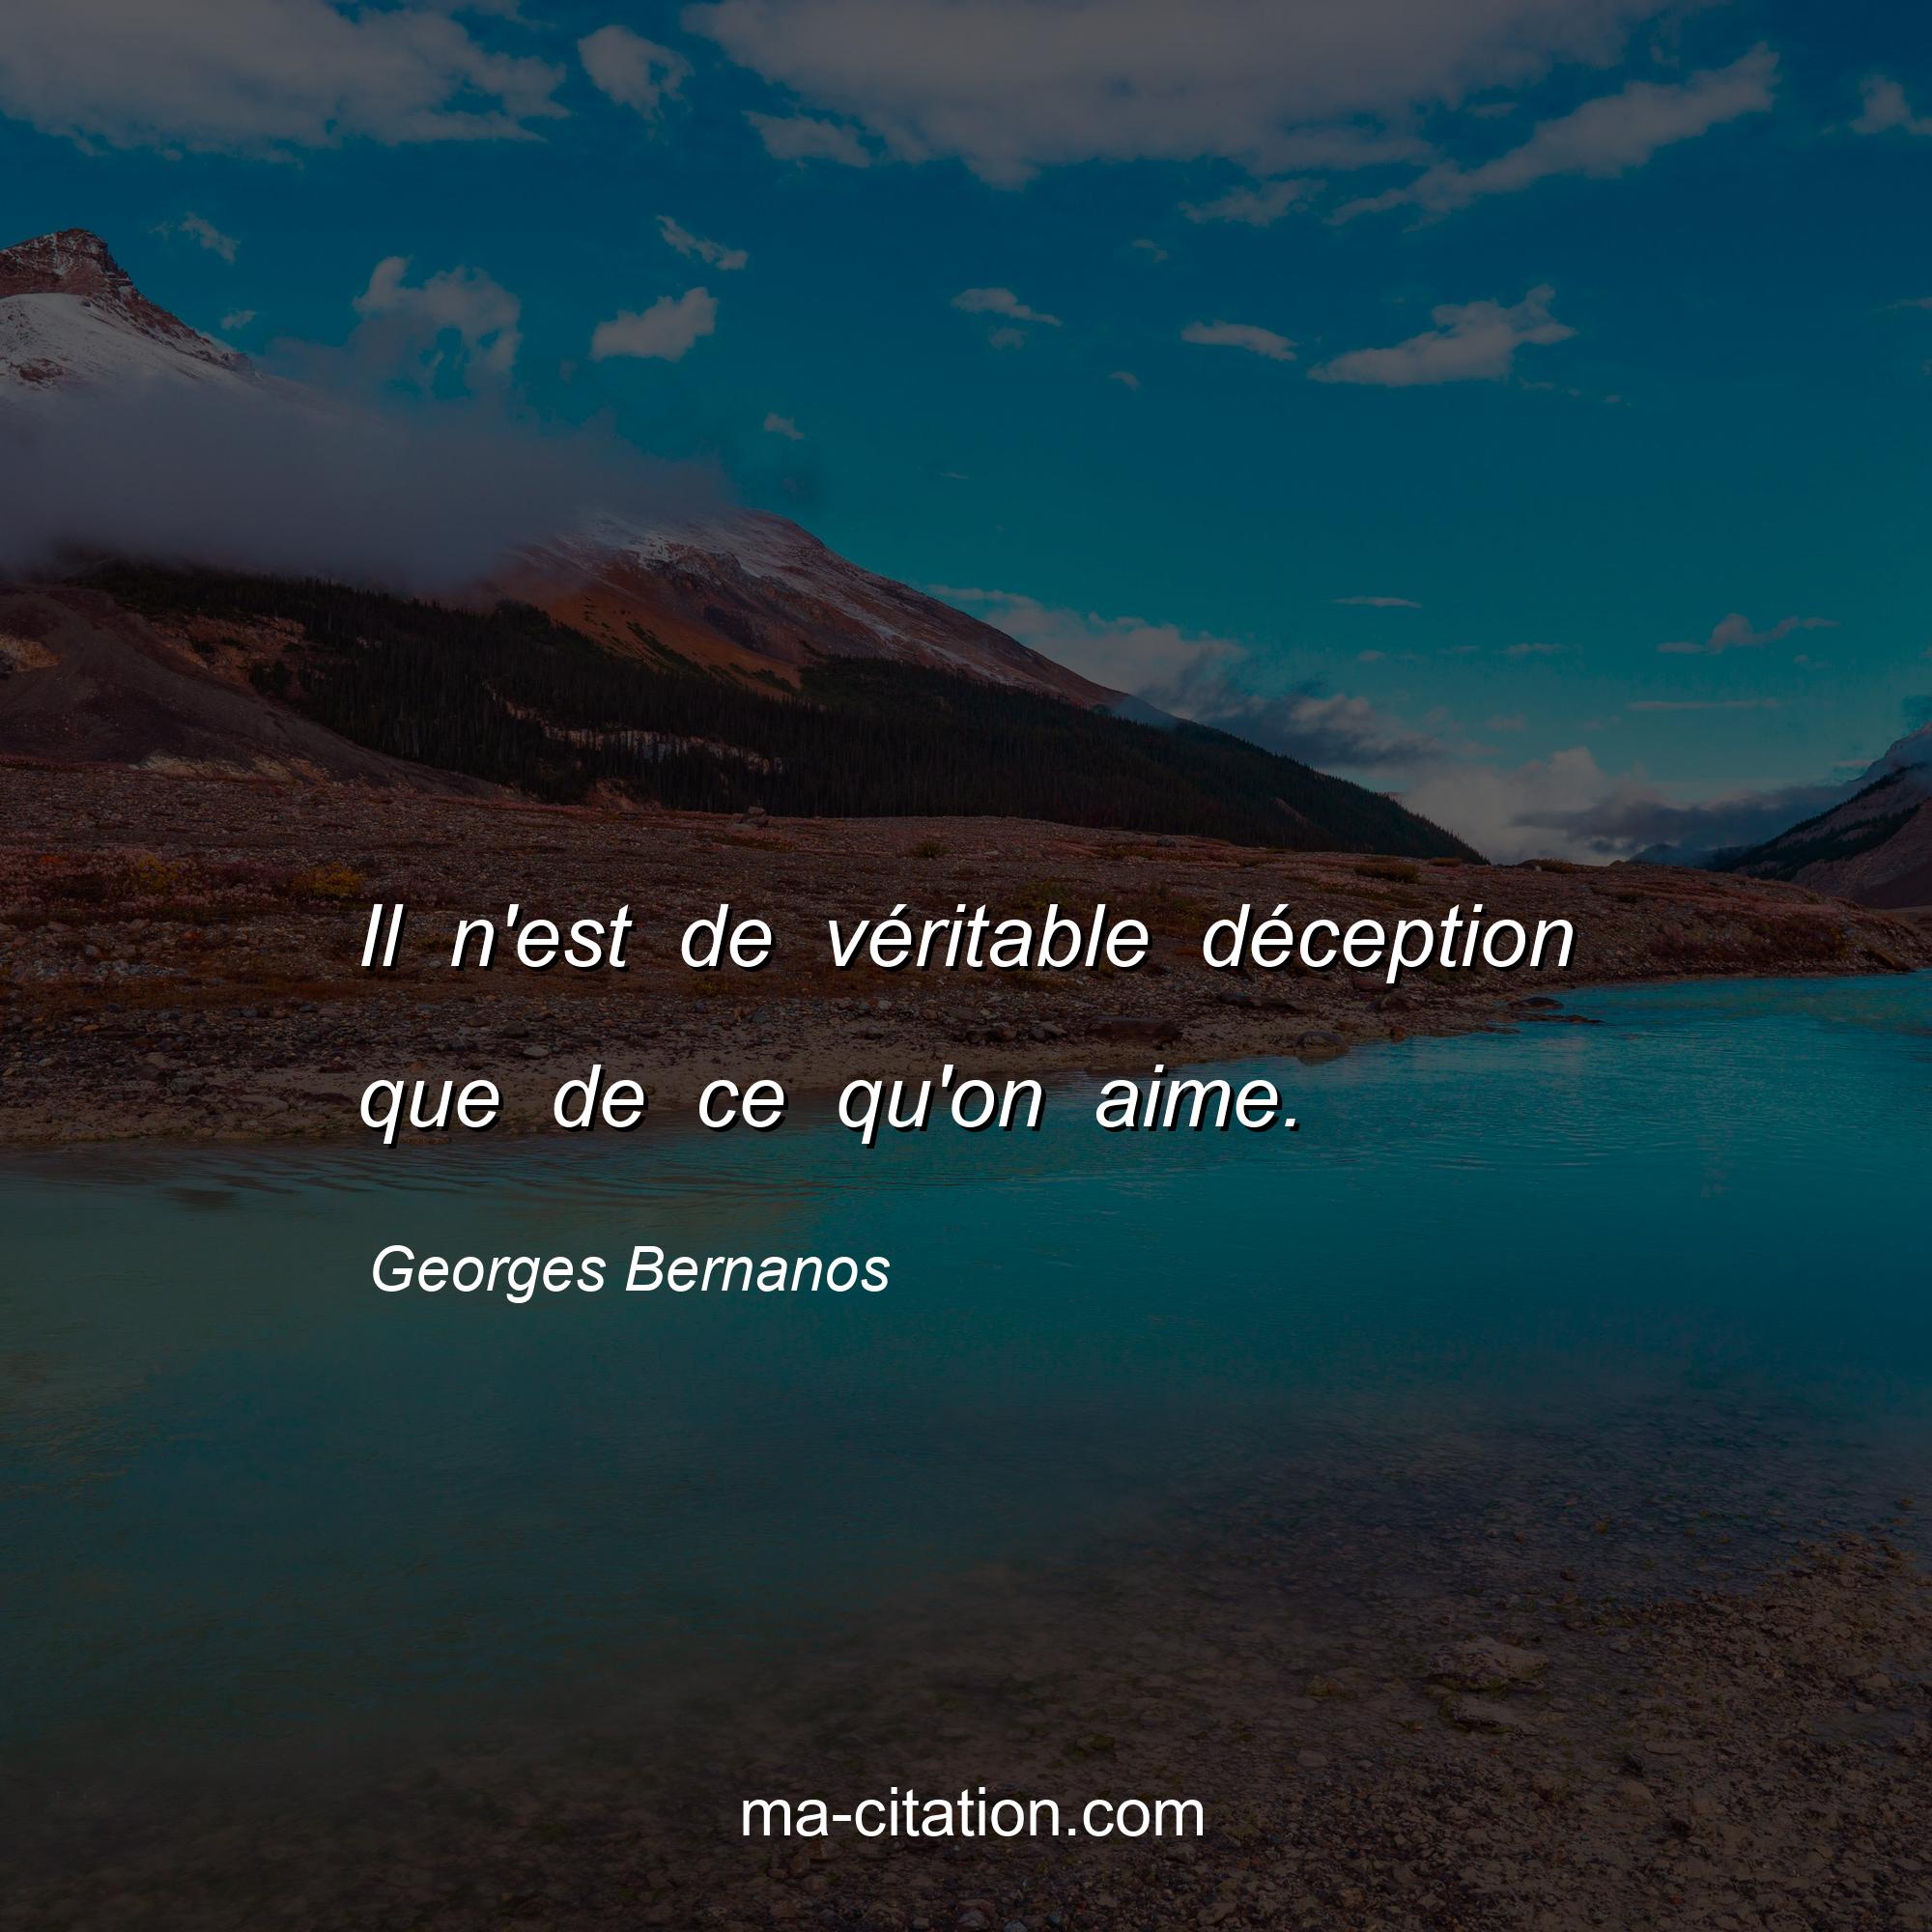 Georges Bernanos : Il n'est de véritable déception que de ce qu'on aime.